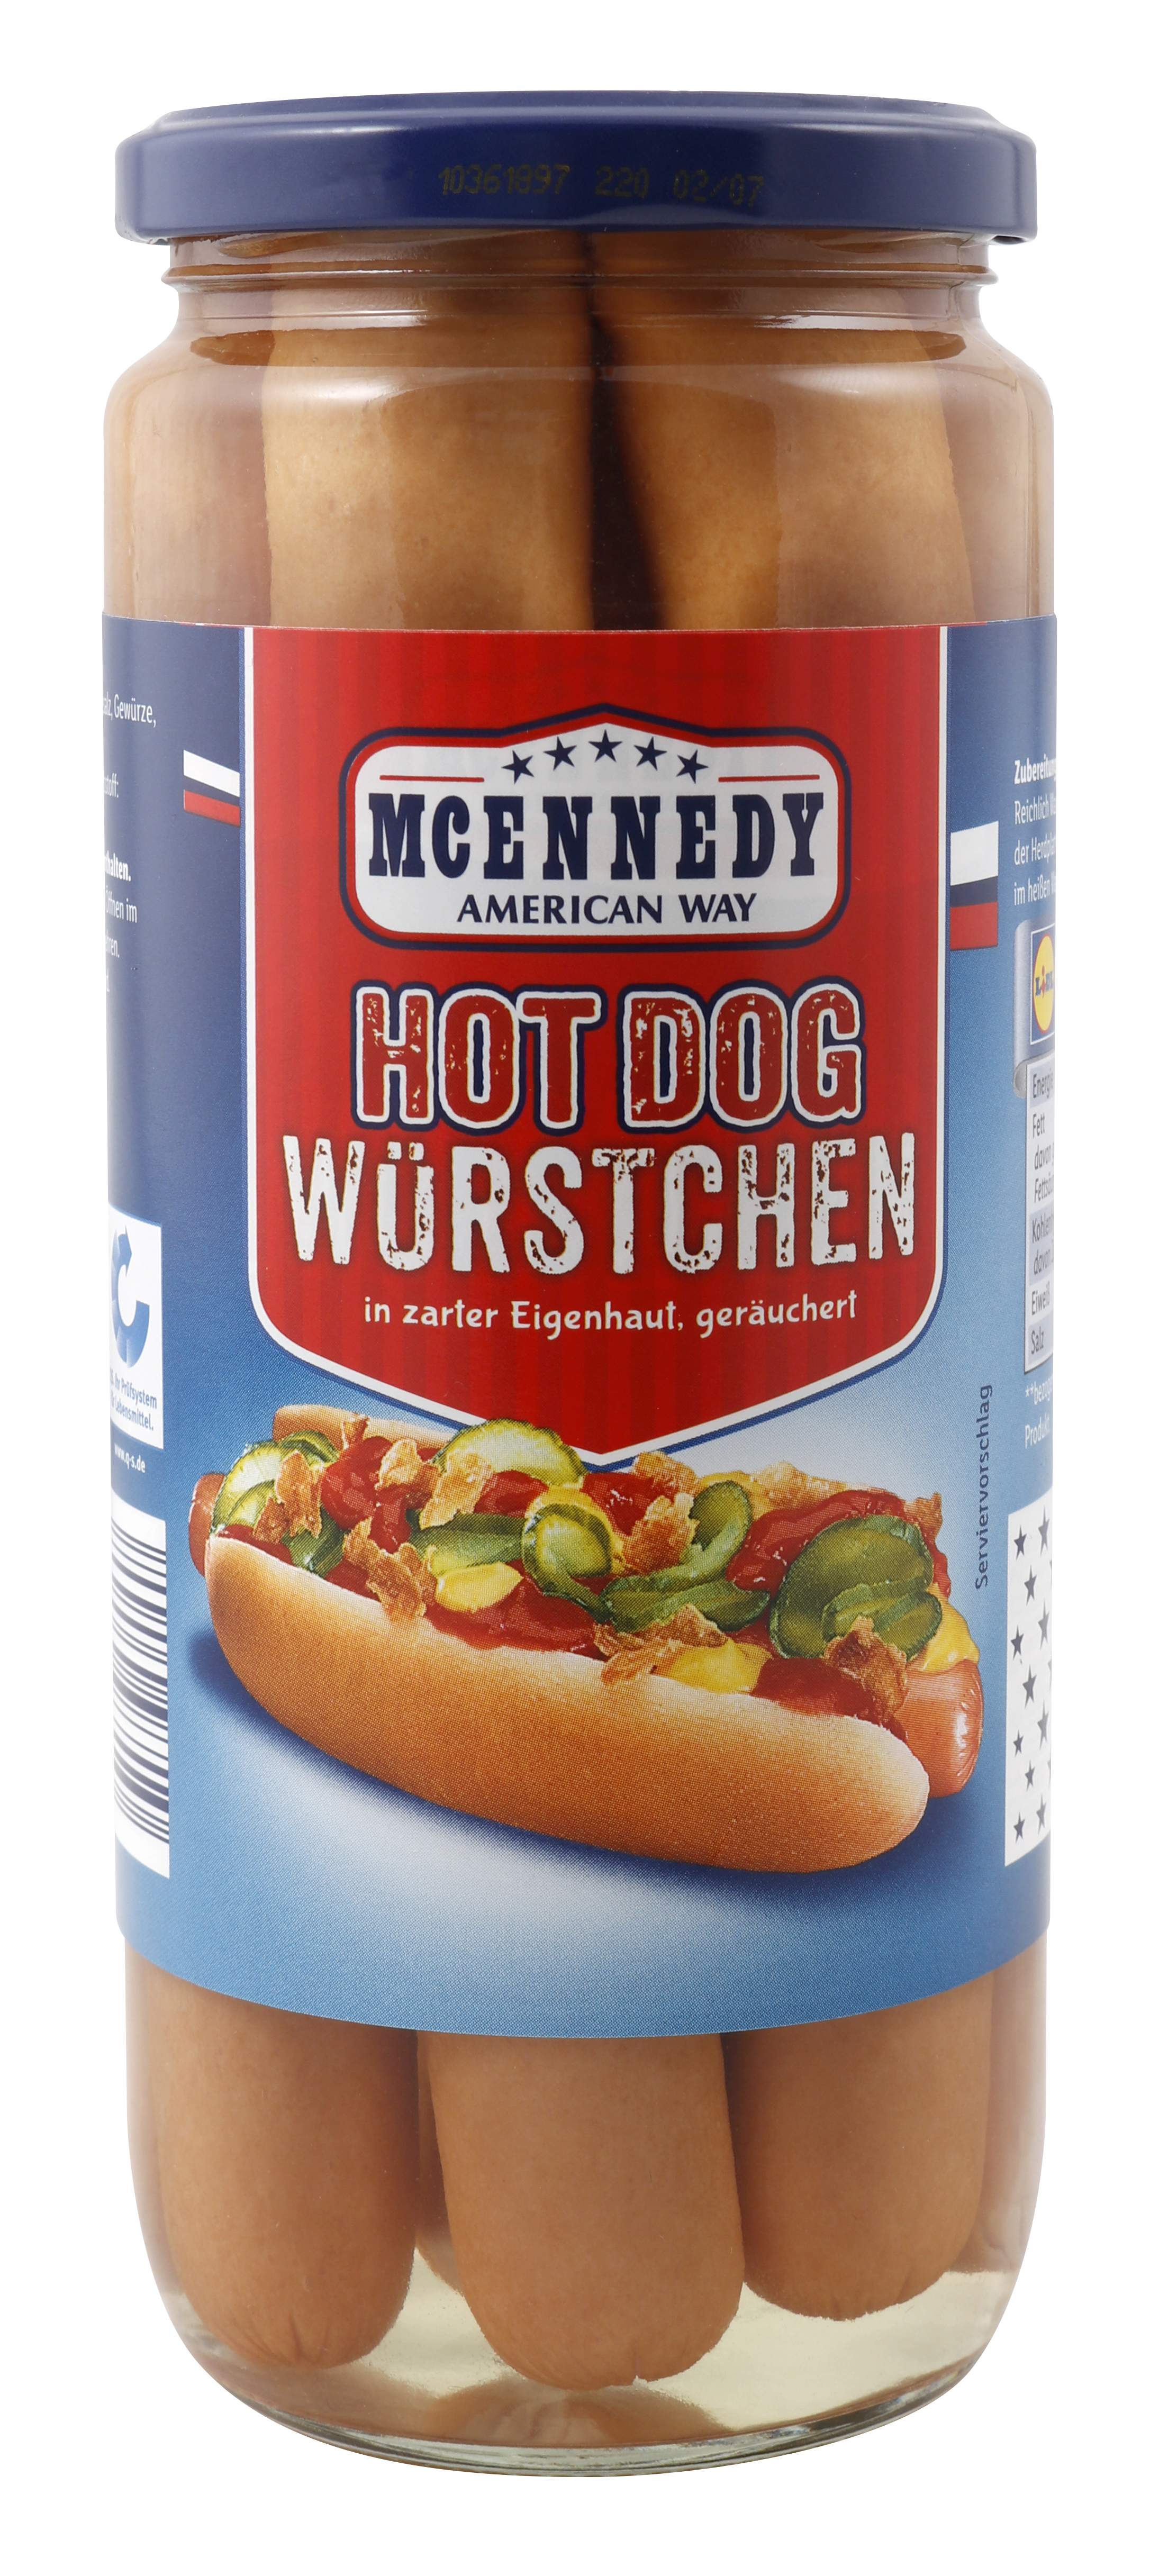 Wurst Hot Wurst Mühlen Würstchen zur / McEnnedy / Dog mynetfair · / GmbH Getränke Gruppe Geflügel Lebensmittel Fleisch aus Wurstwaren / Markenvertriebs (300 Tabakwaren Gramm) (Lidl) Schweinefleisch ·